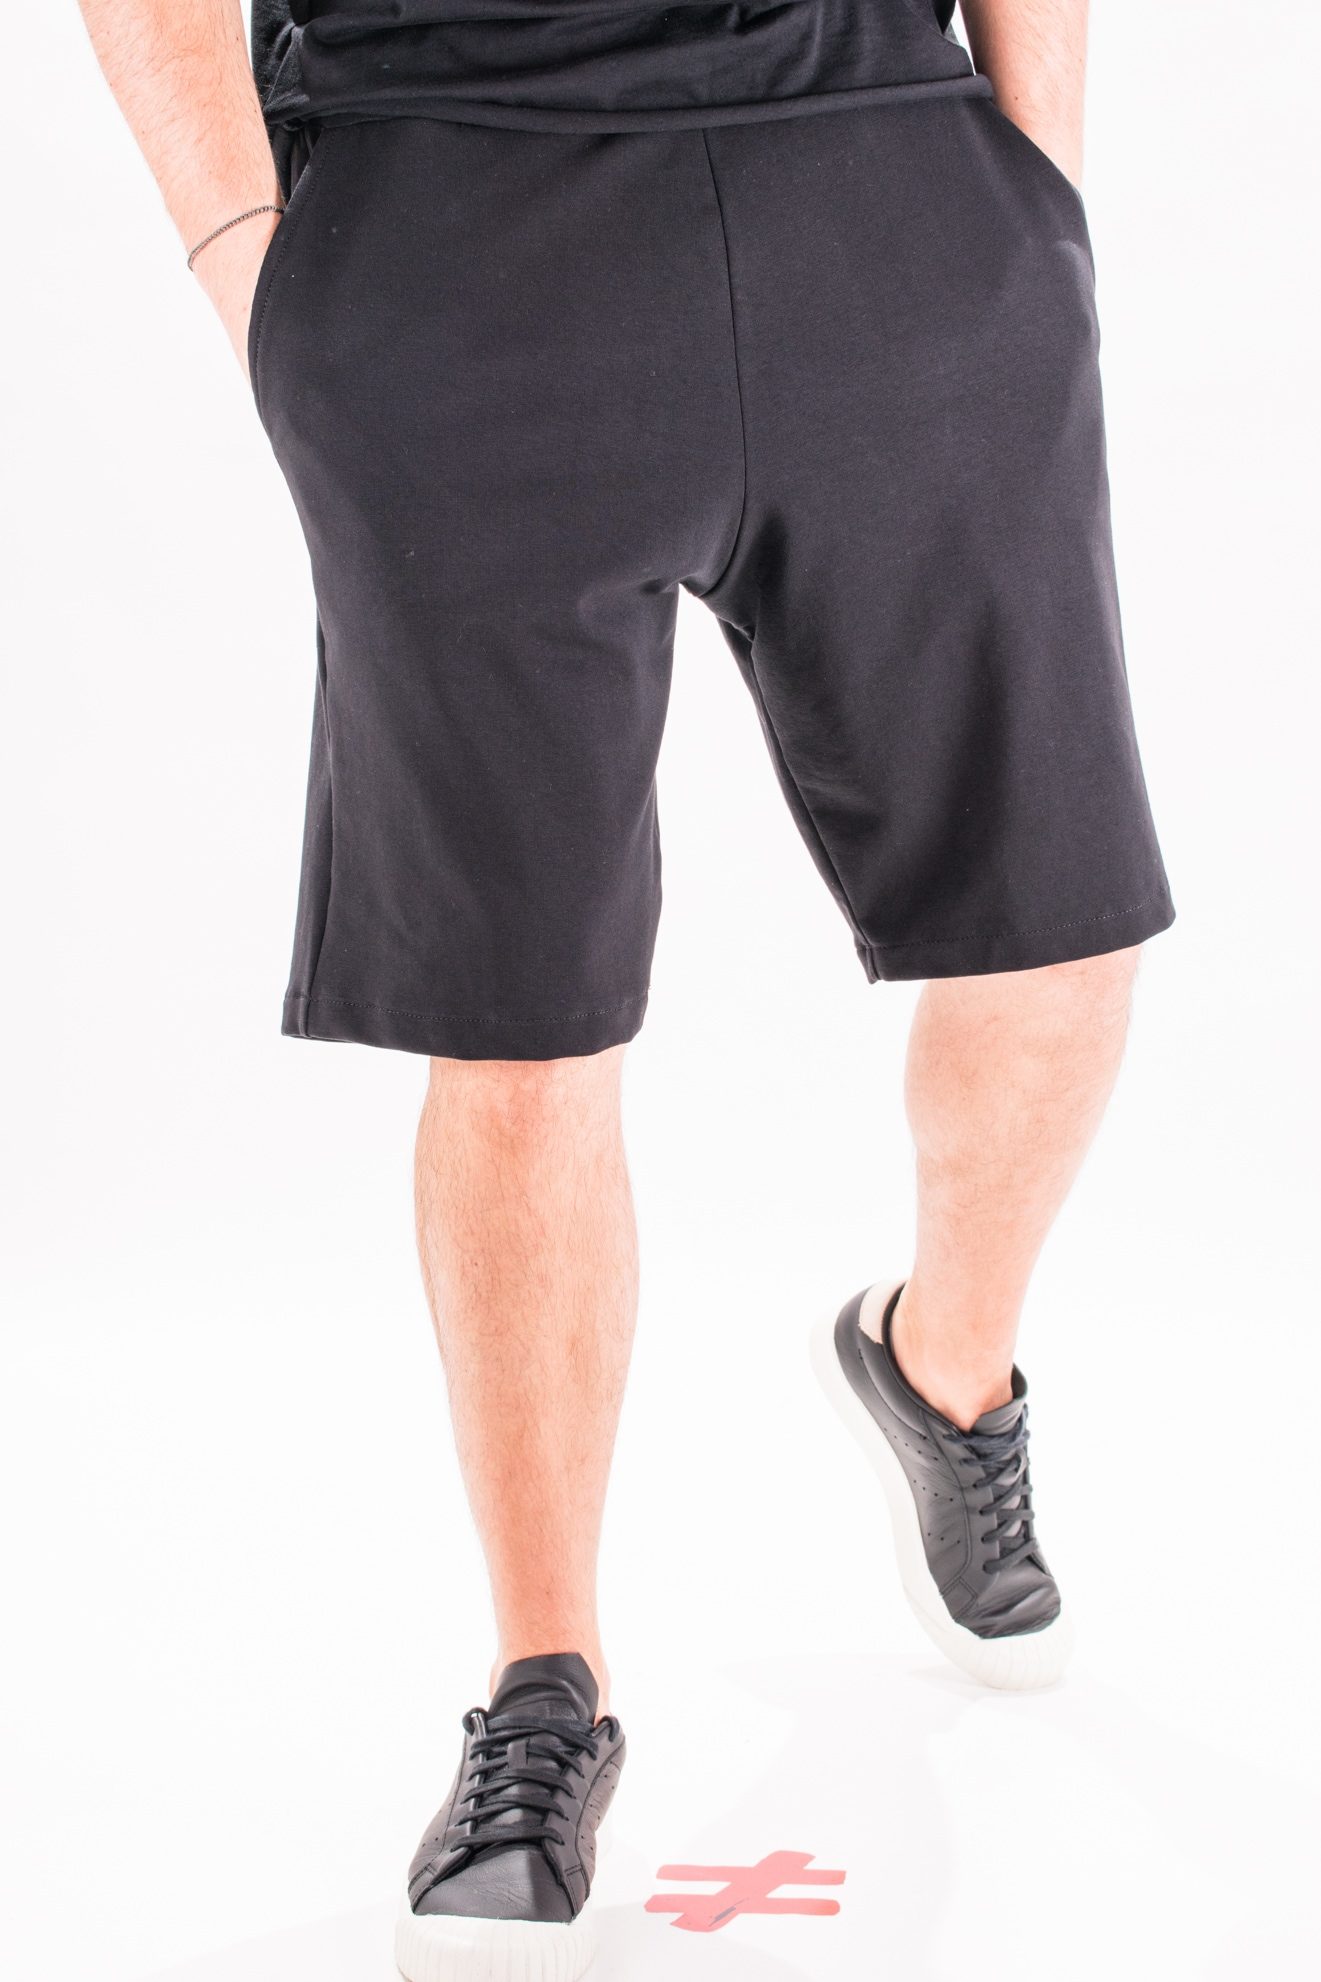 Pantaloni simple black cotton